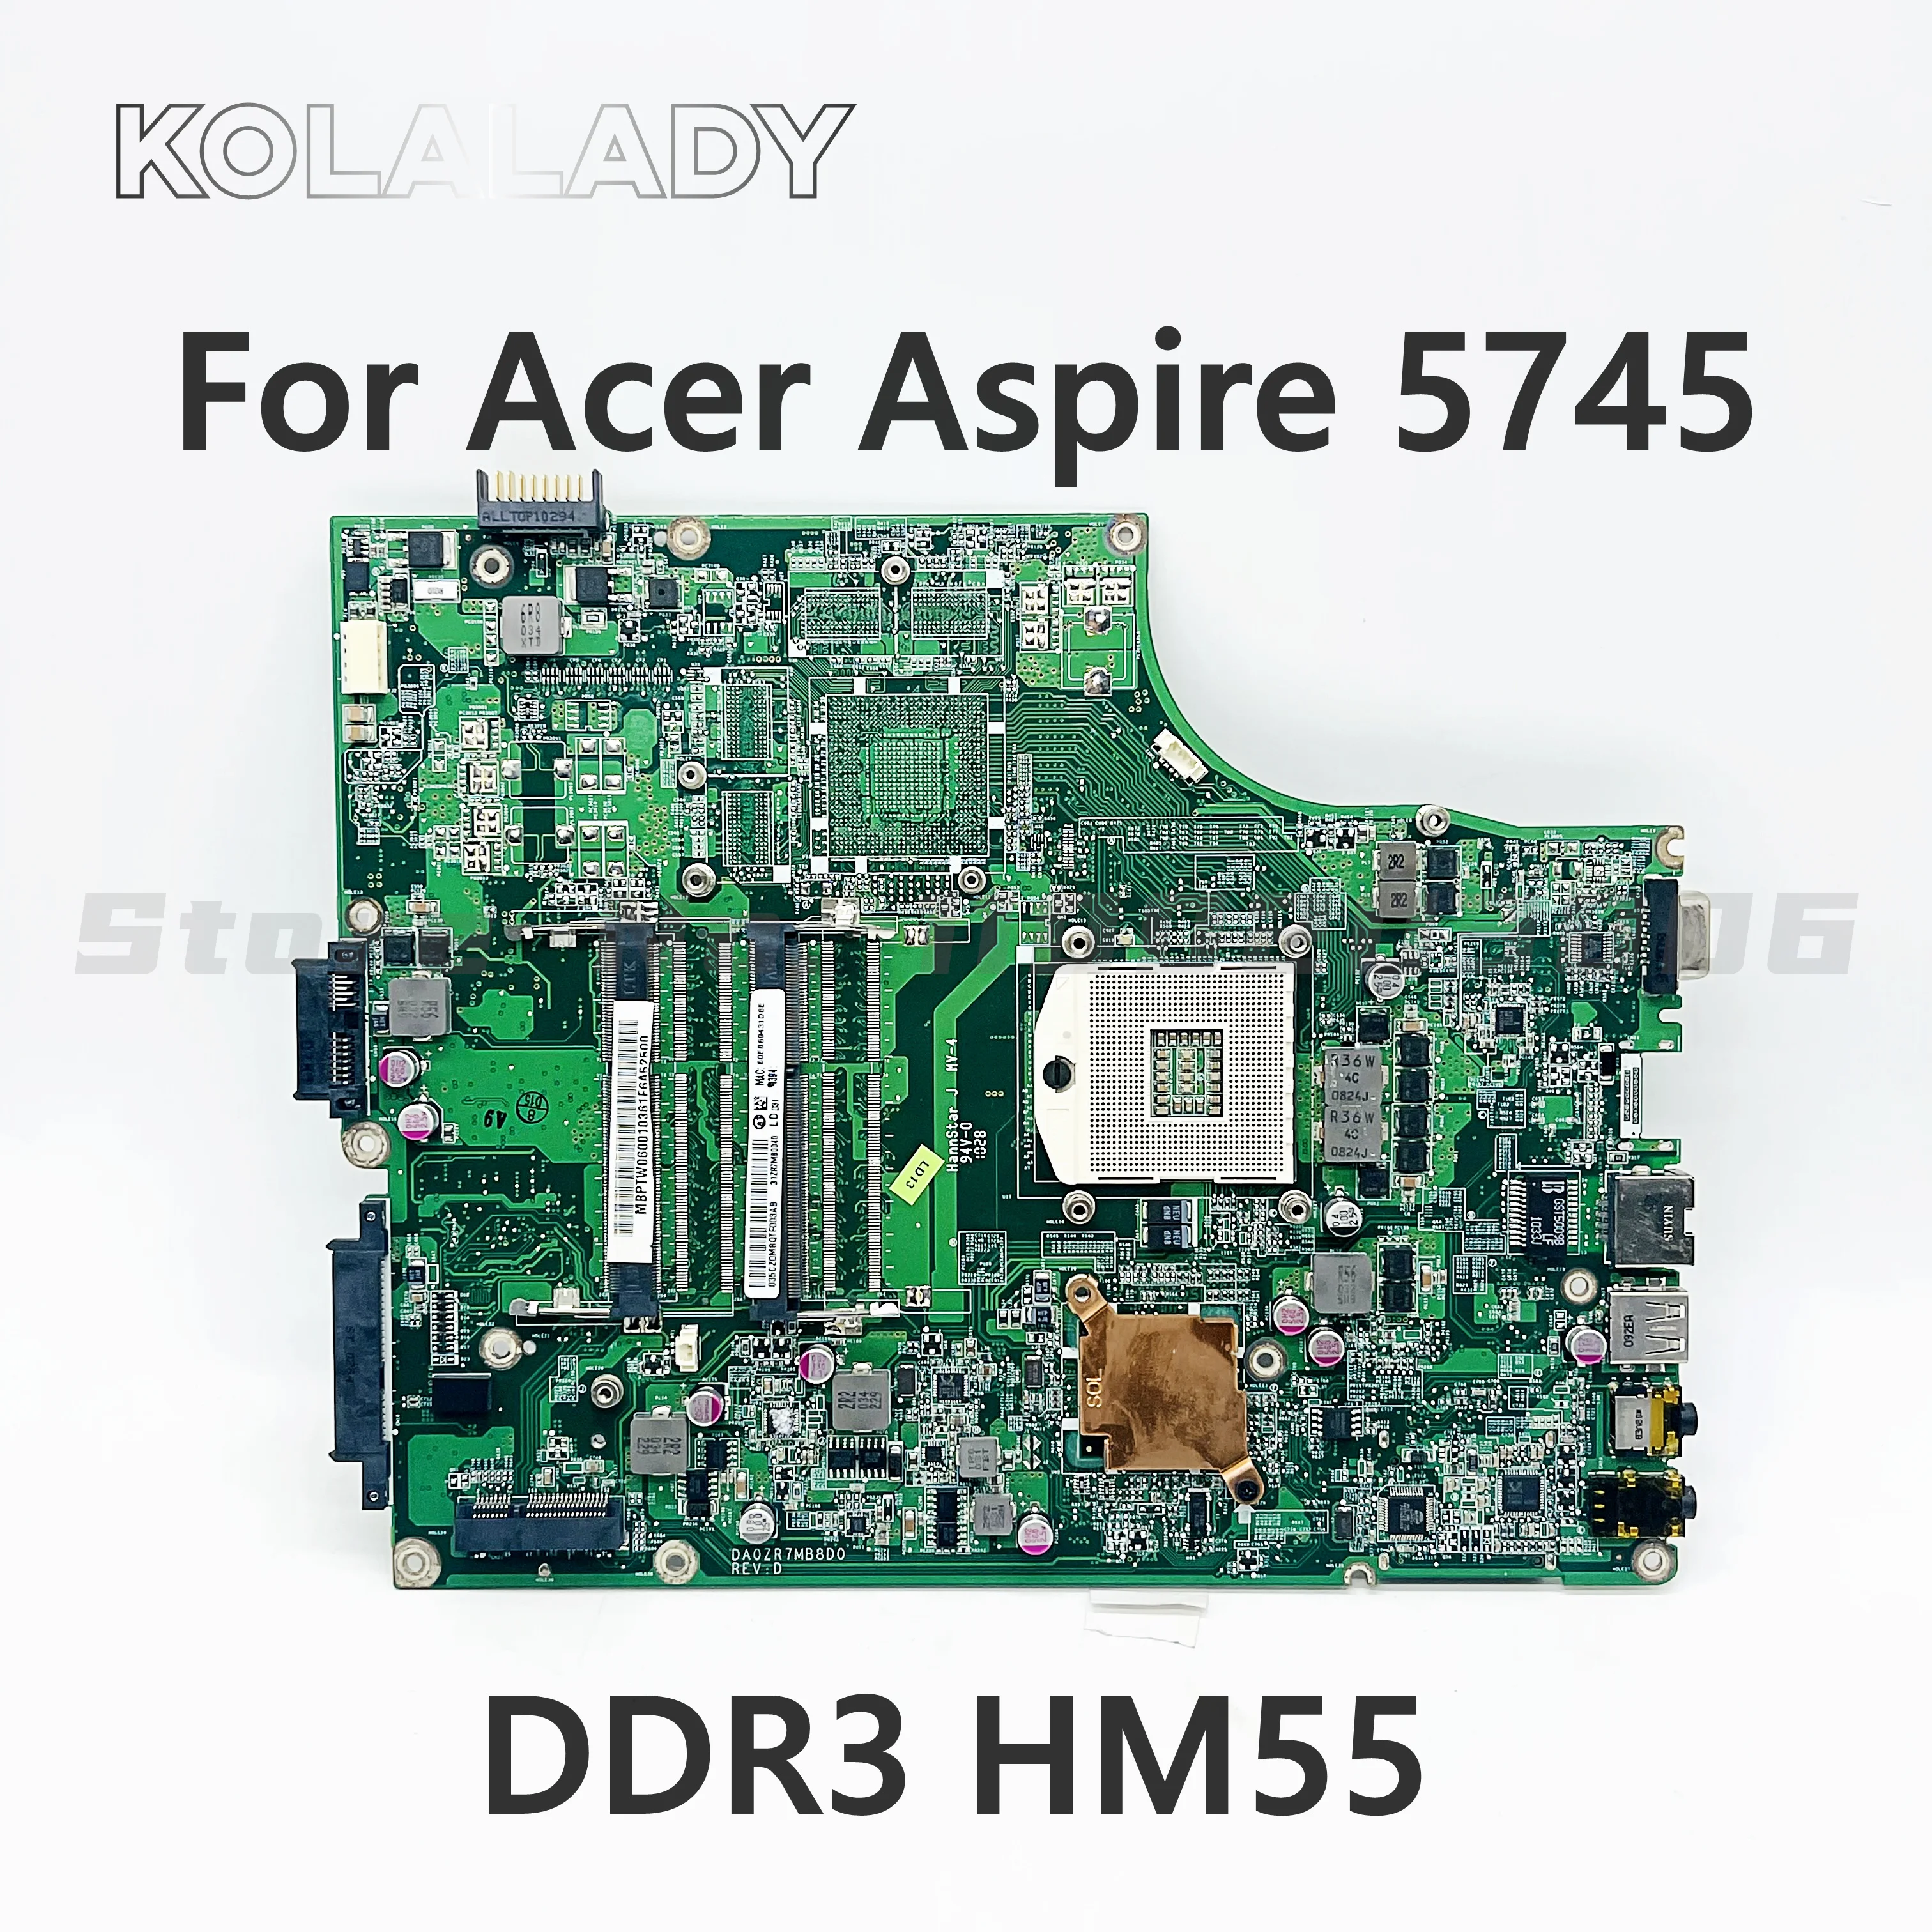 

Original DA0ZR7MB8D0 For Acer Aspire 5745 5745G Laptop Motherboard intel HM55 MBPTX06001 MB.PTX06.001 mainboard 100% tested